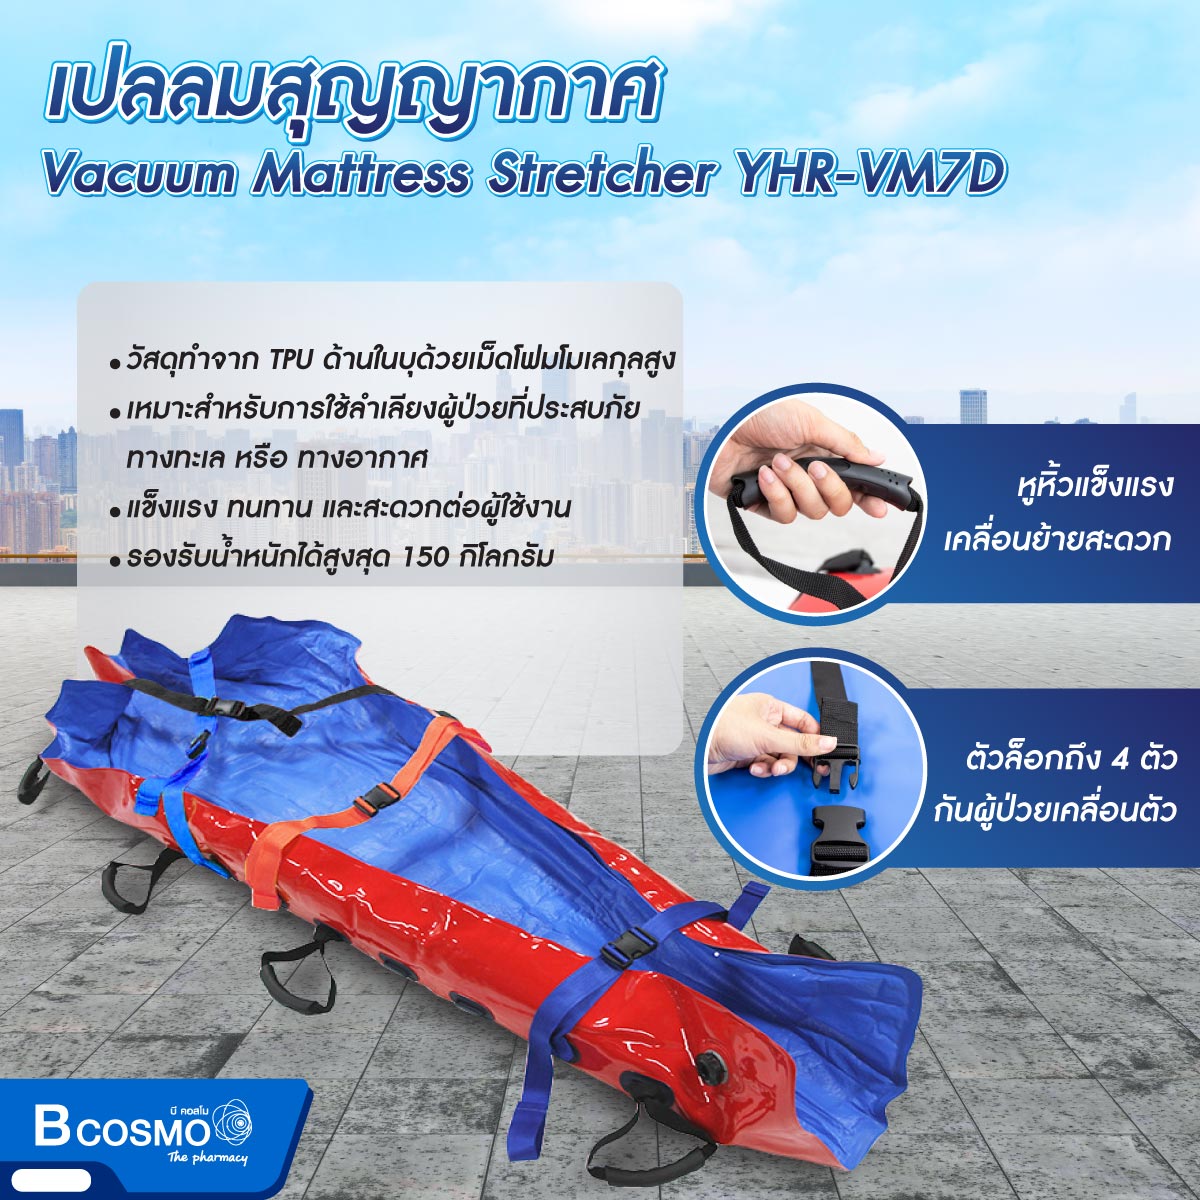 เปลลมสุญญากาศ Vacuum Mattress Stretcher YHR-VM7D